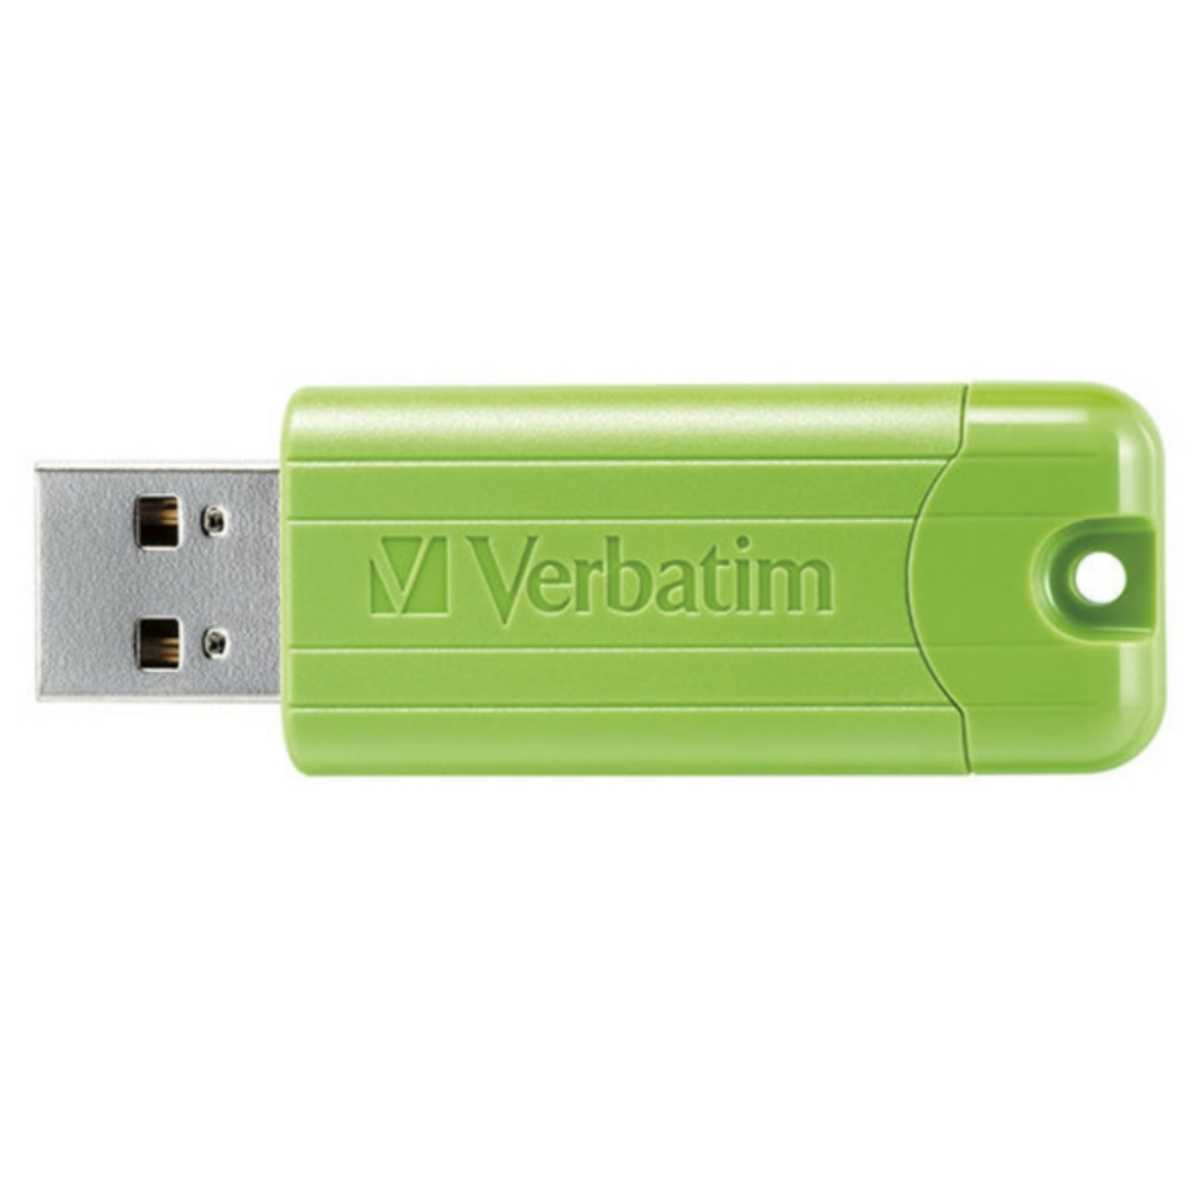 スライド式USB3.0メモリー64GB(Verbatim)USBSPS64GGV1【1円スタート出品・新品・送料無料】_画像2